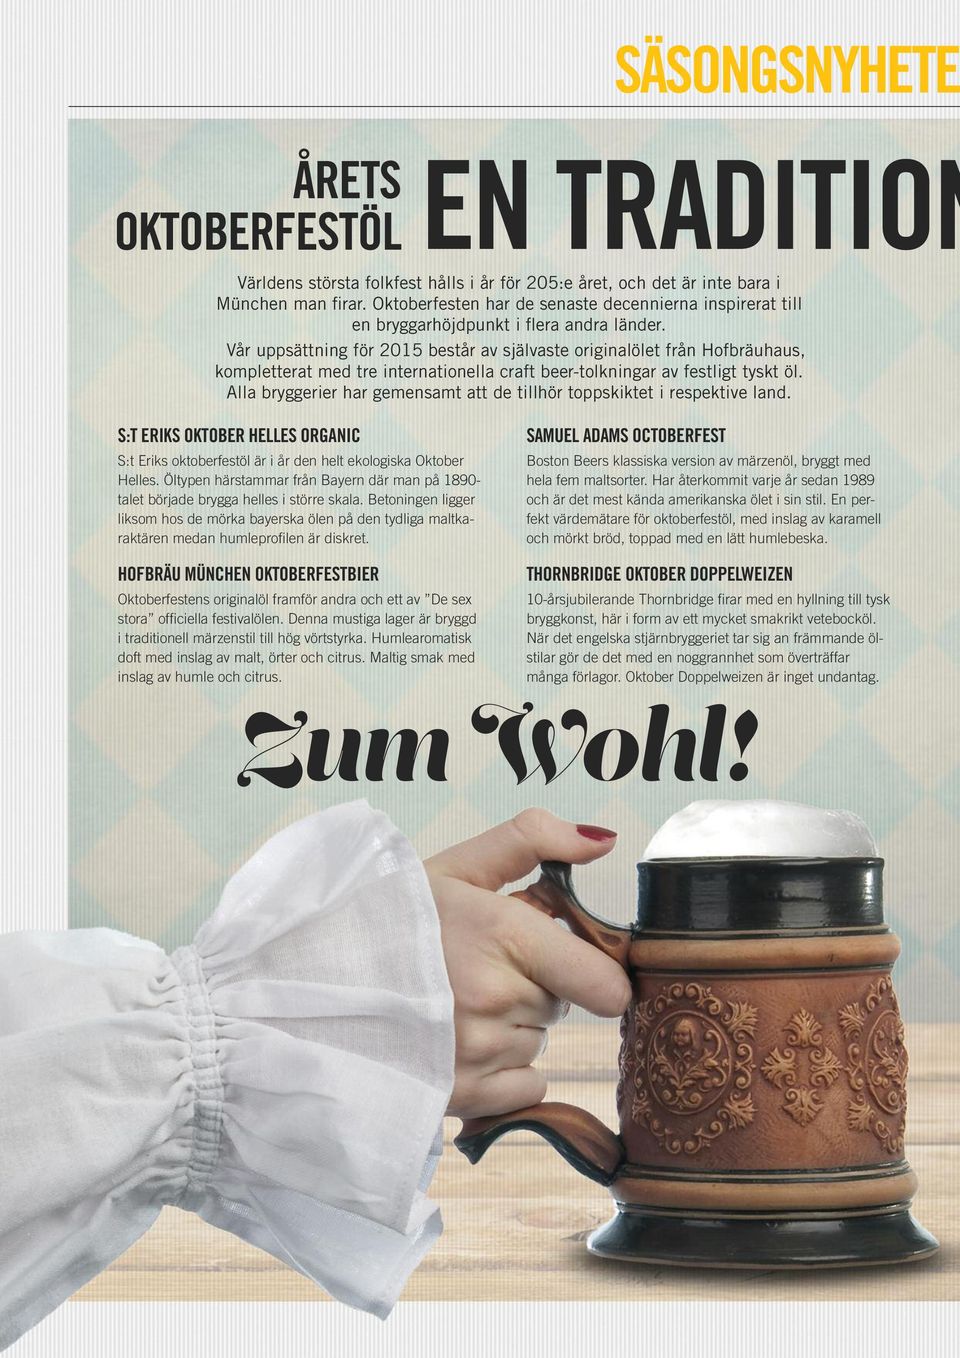 Vår uppsättning för 2015 består av självaste originalölet från Hofbräuhaus, kompletterat med tre internationella craft beer-tolkningar av festligt tyskt öl.